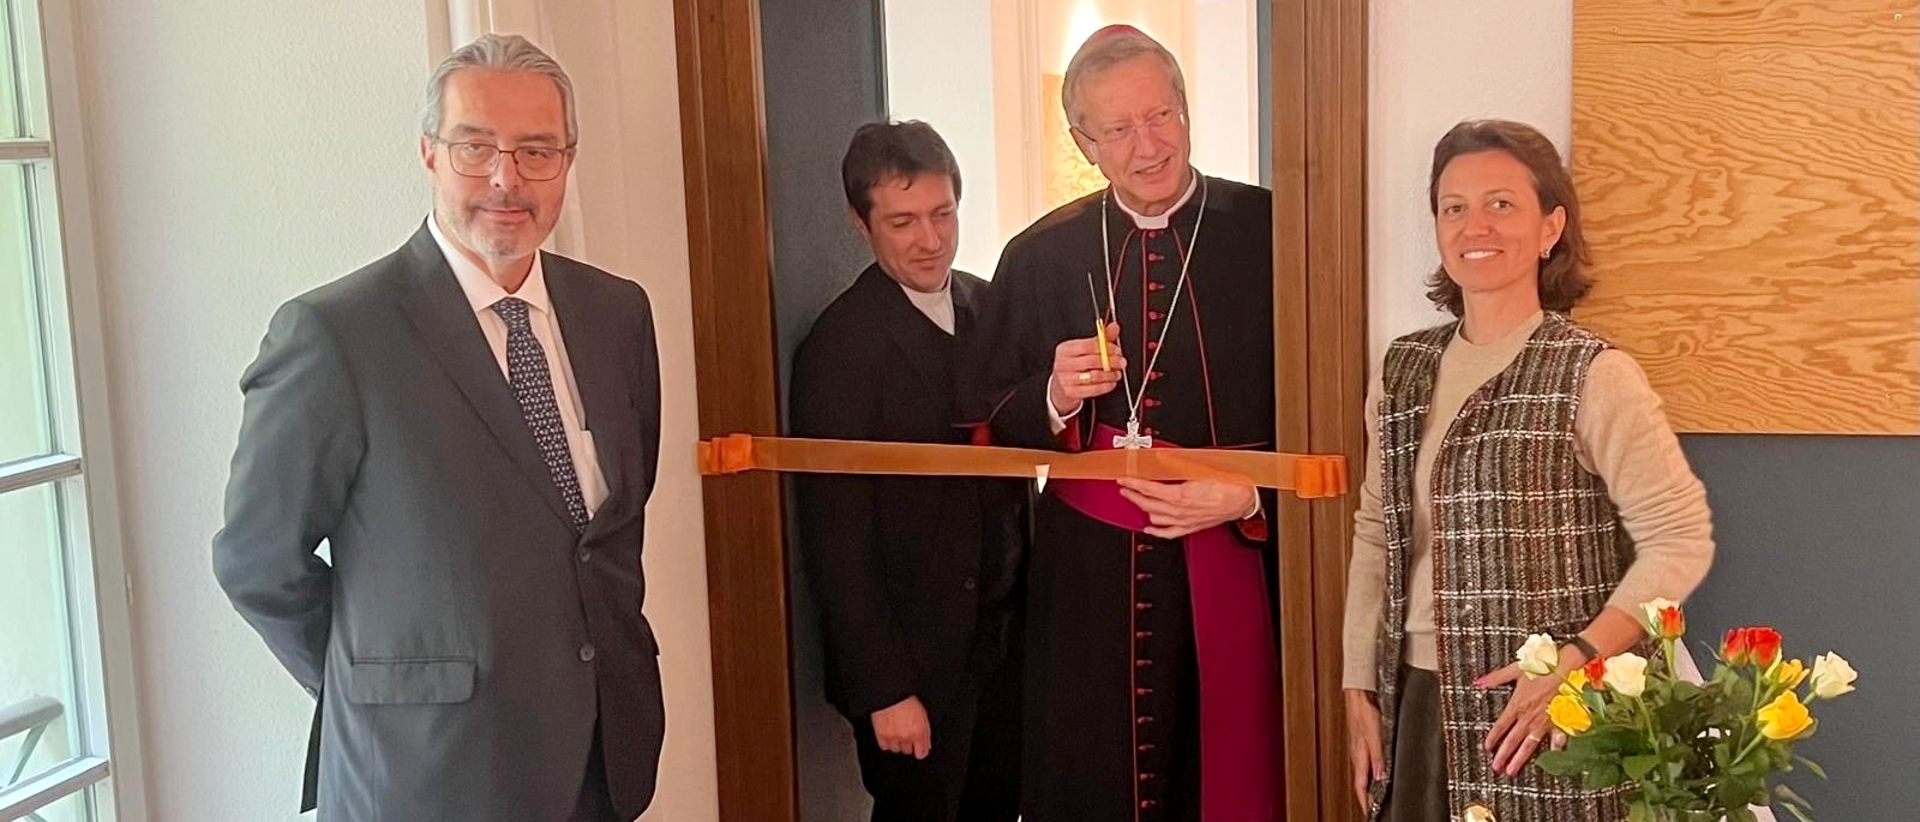 Weihbischof Alain de Raemy bei der Einweihung des neuen Zentrum "LabOratorio" in Lugano.